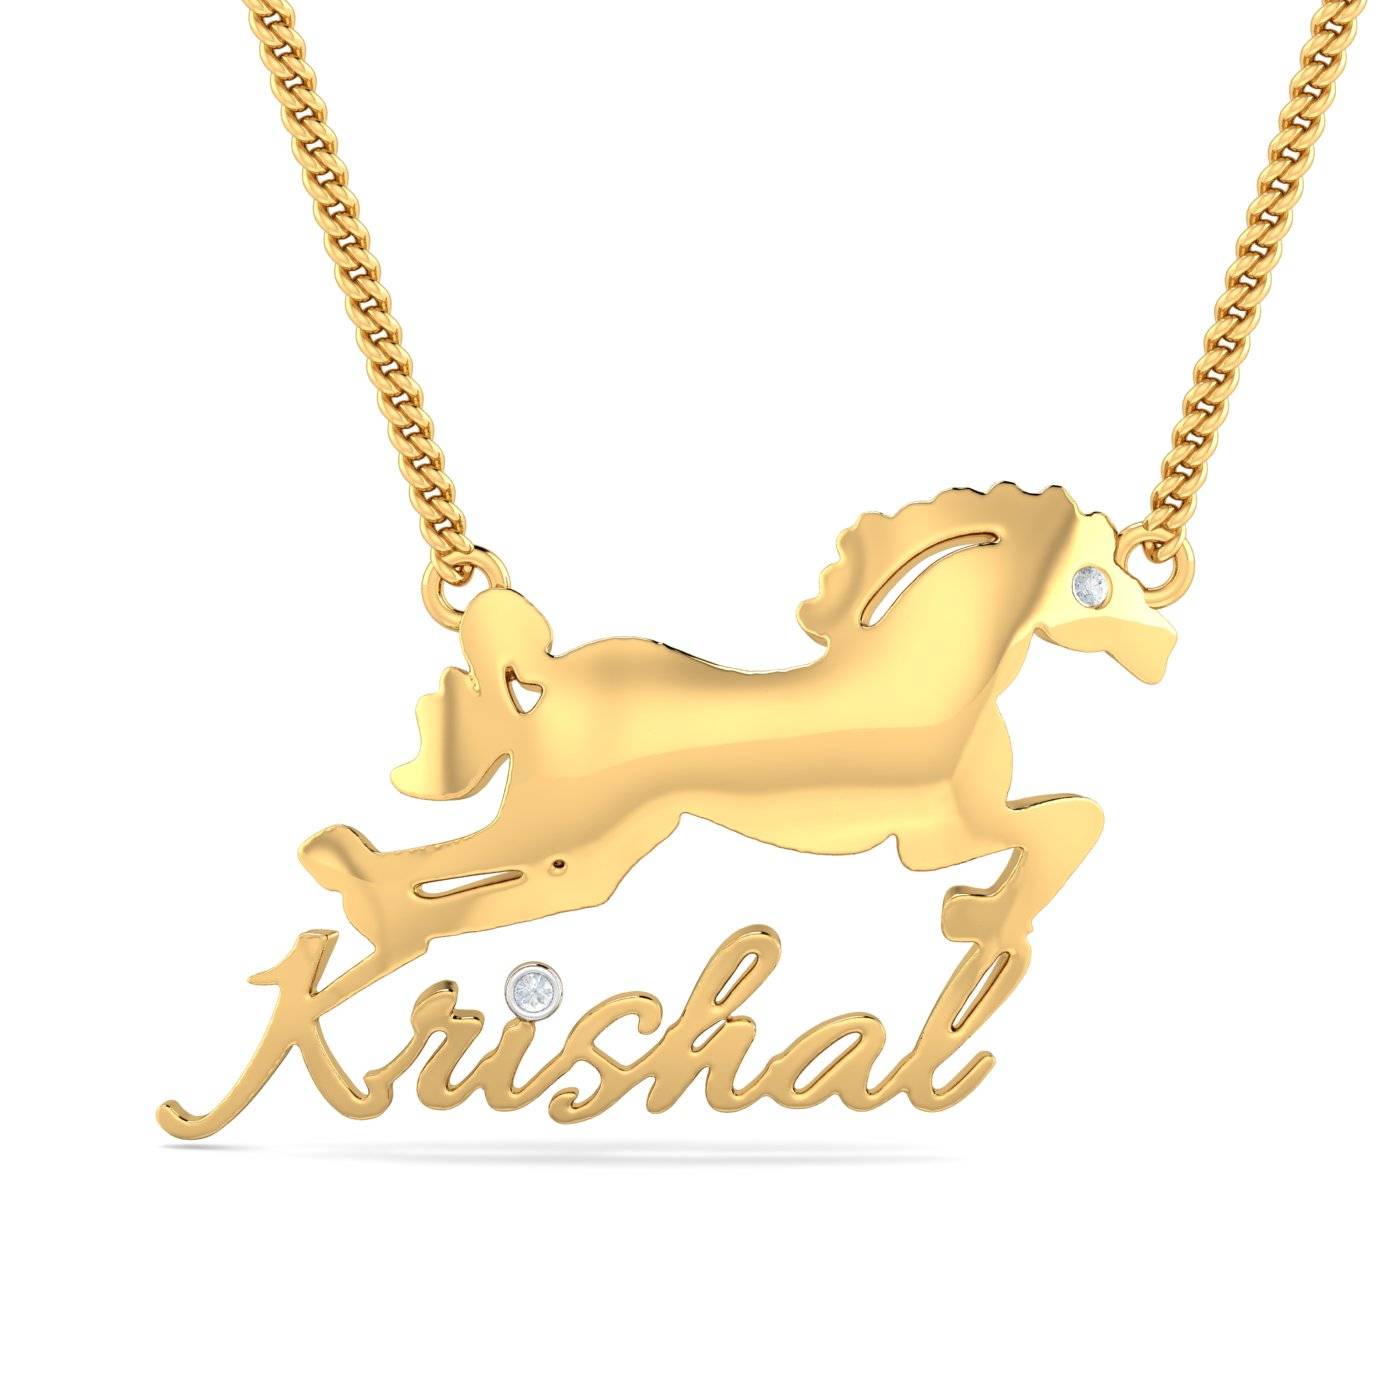 Krishal Name Horse Pendant